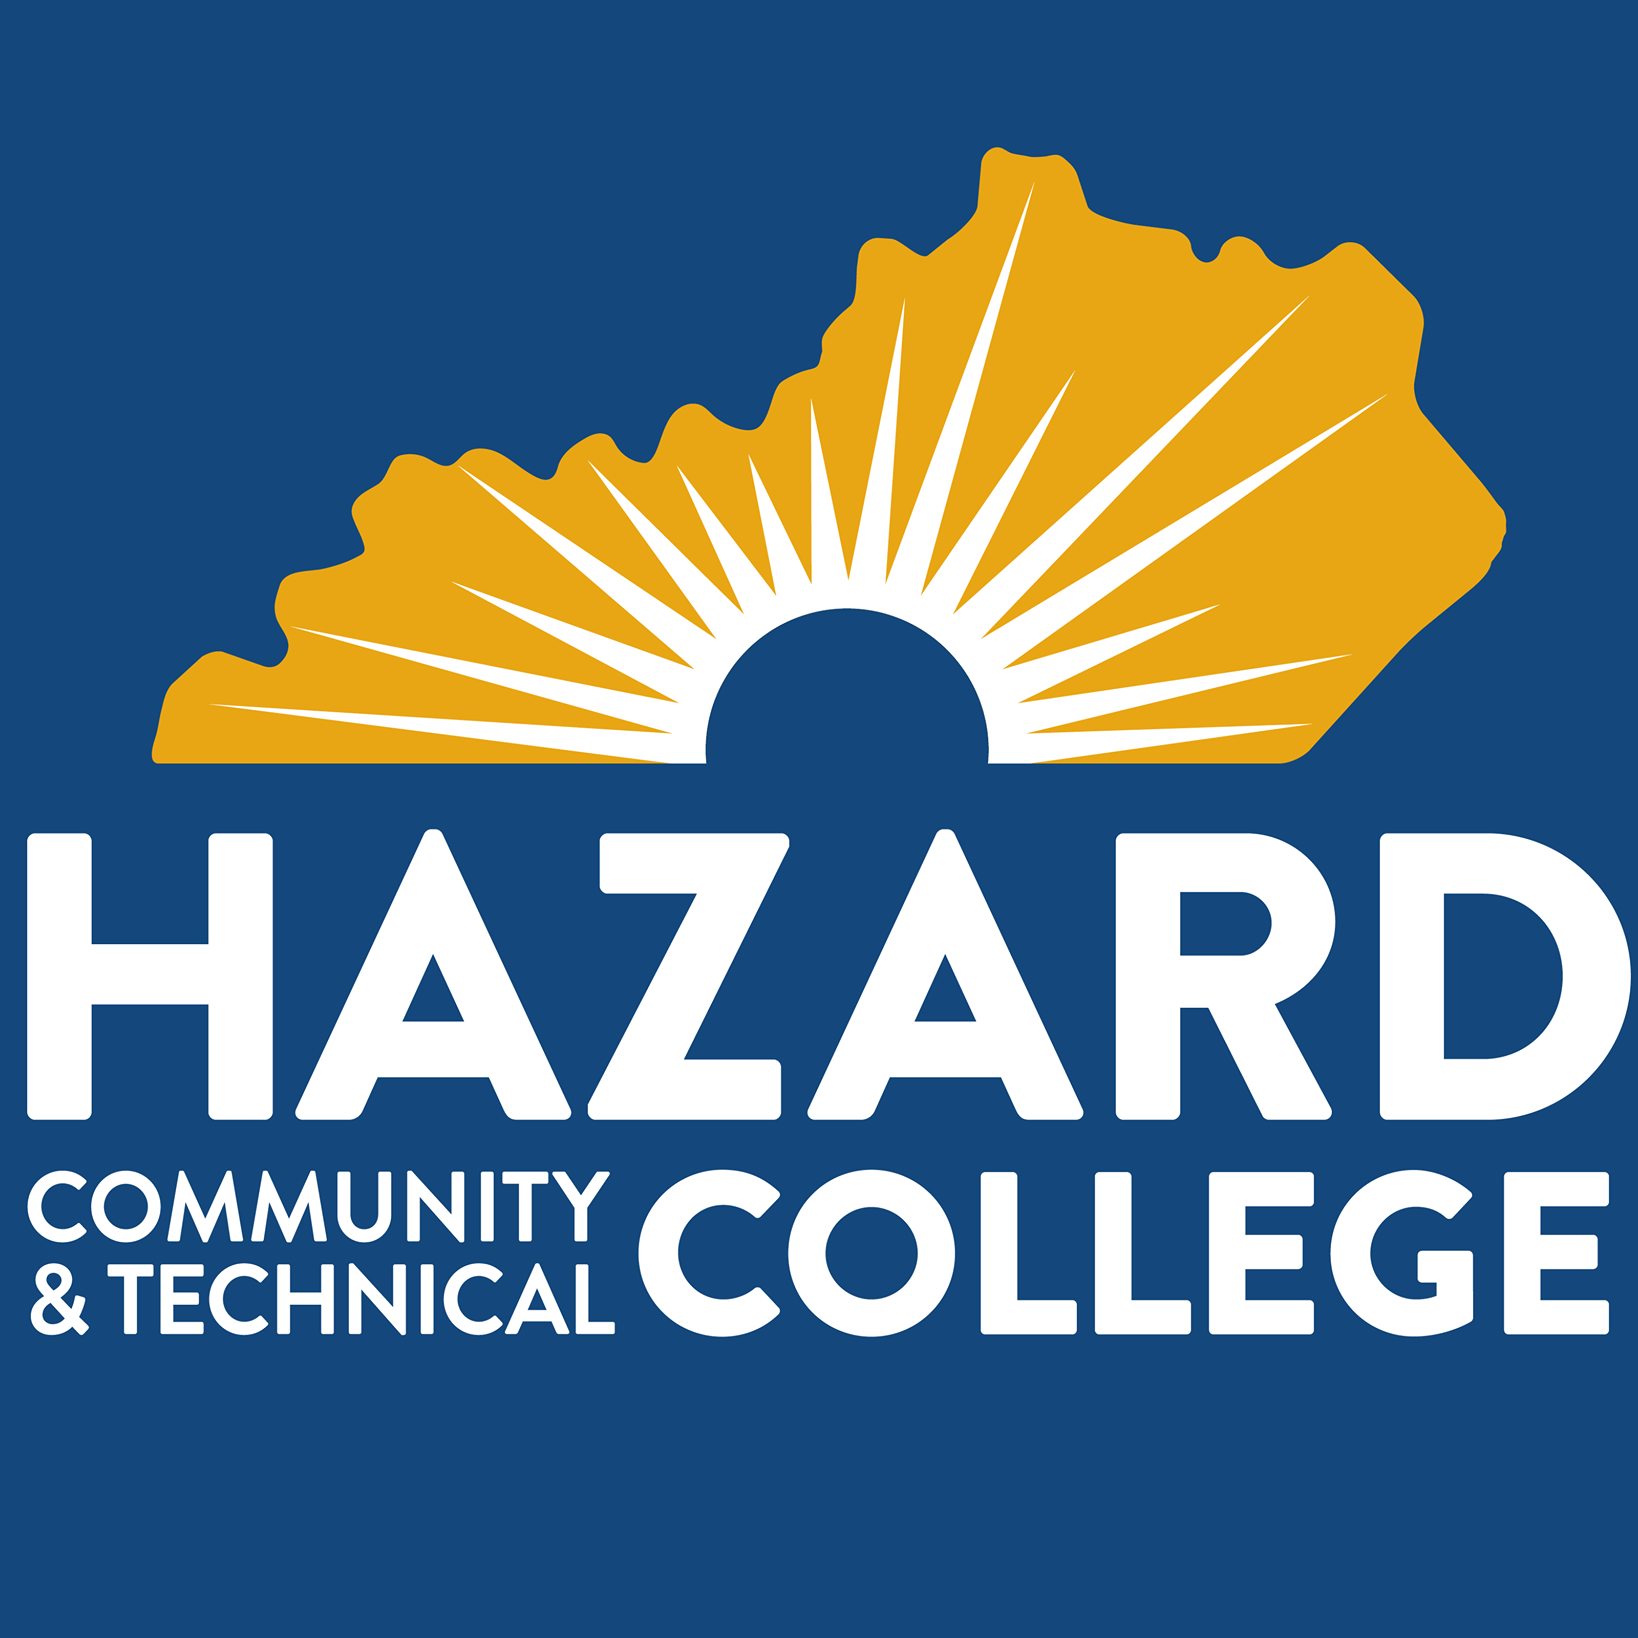 Hazard Community College